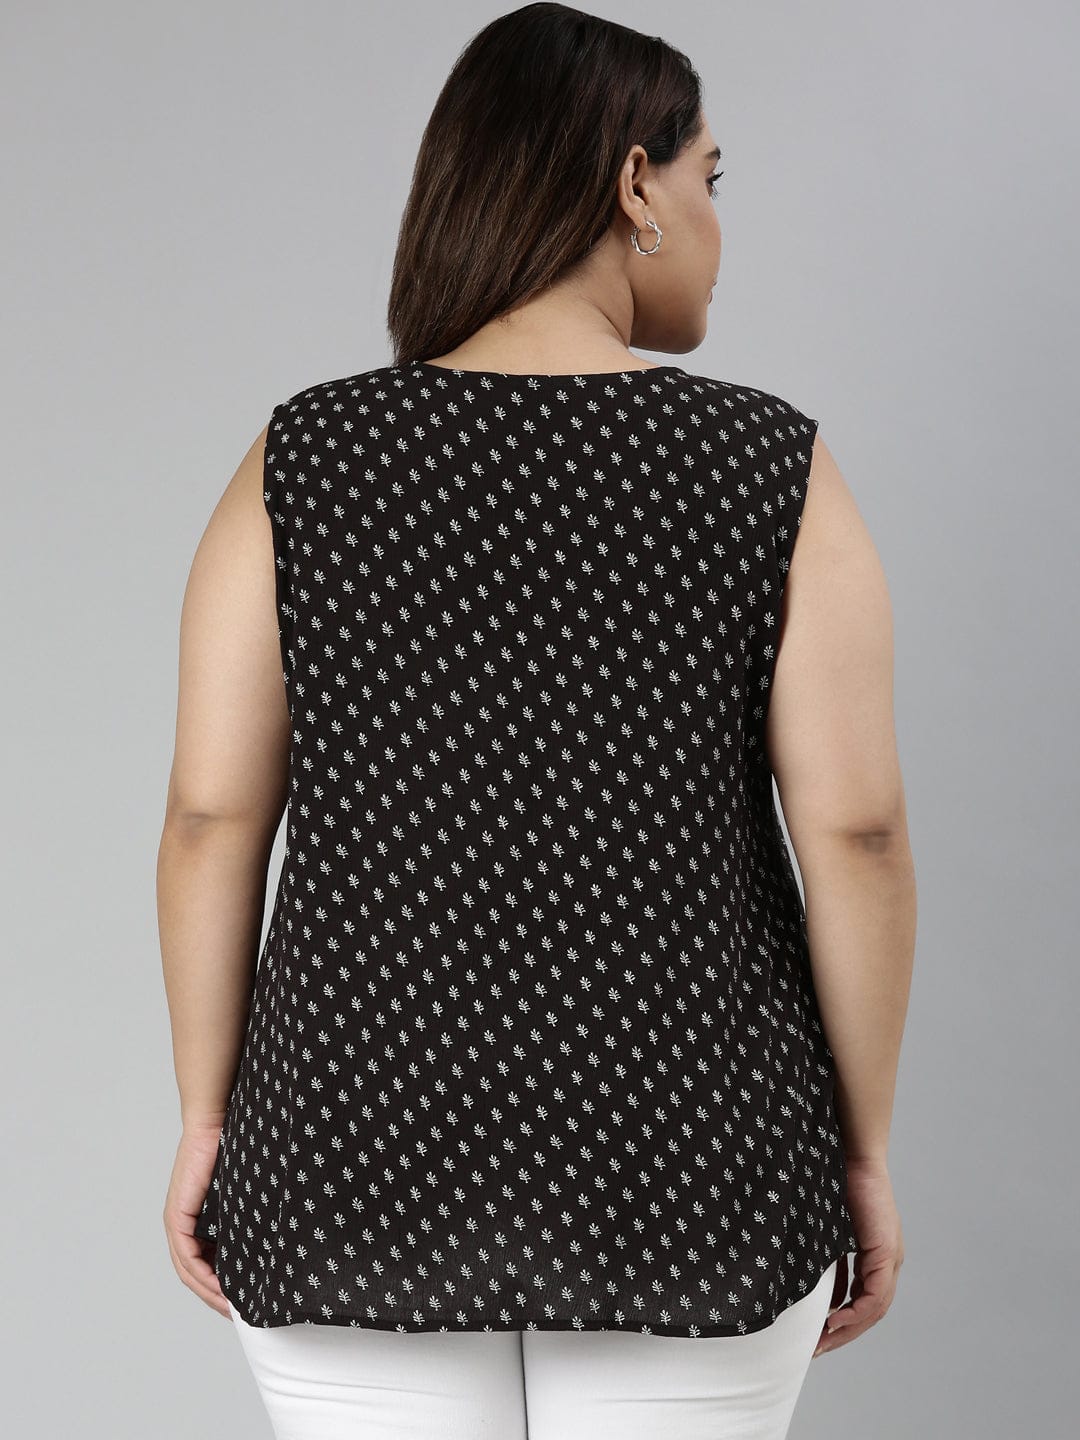 TheShaili - Women's Regular fit Black and white sleeveless top